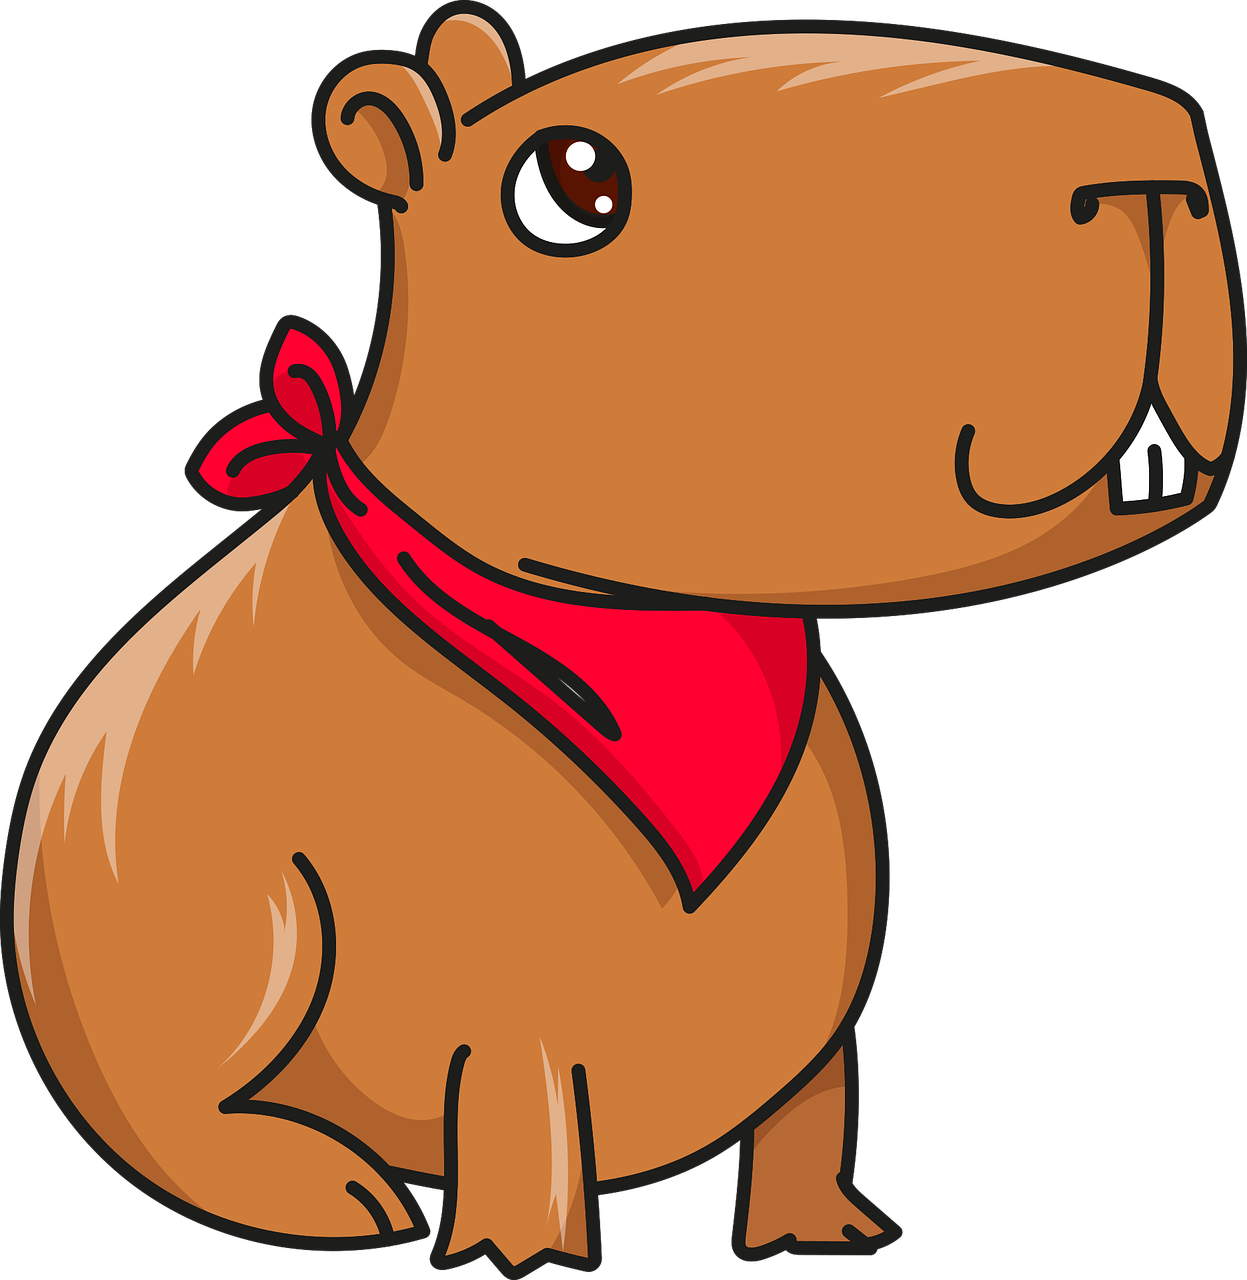 Capybara PNG Image HD